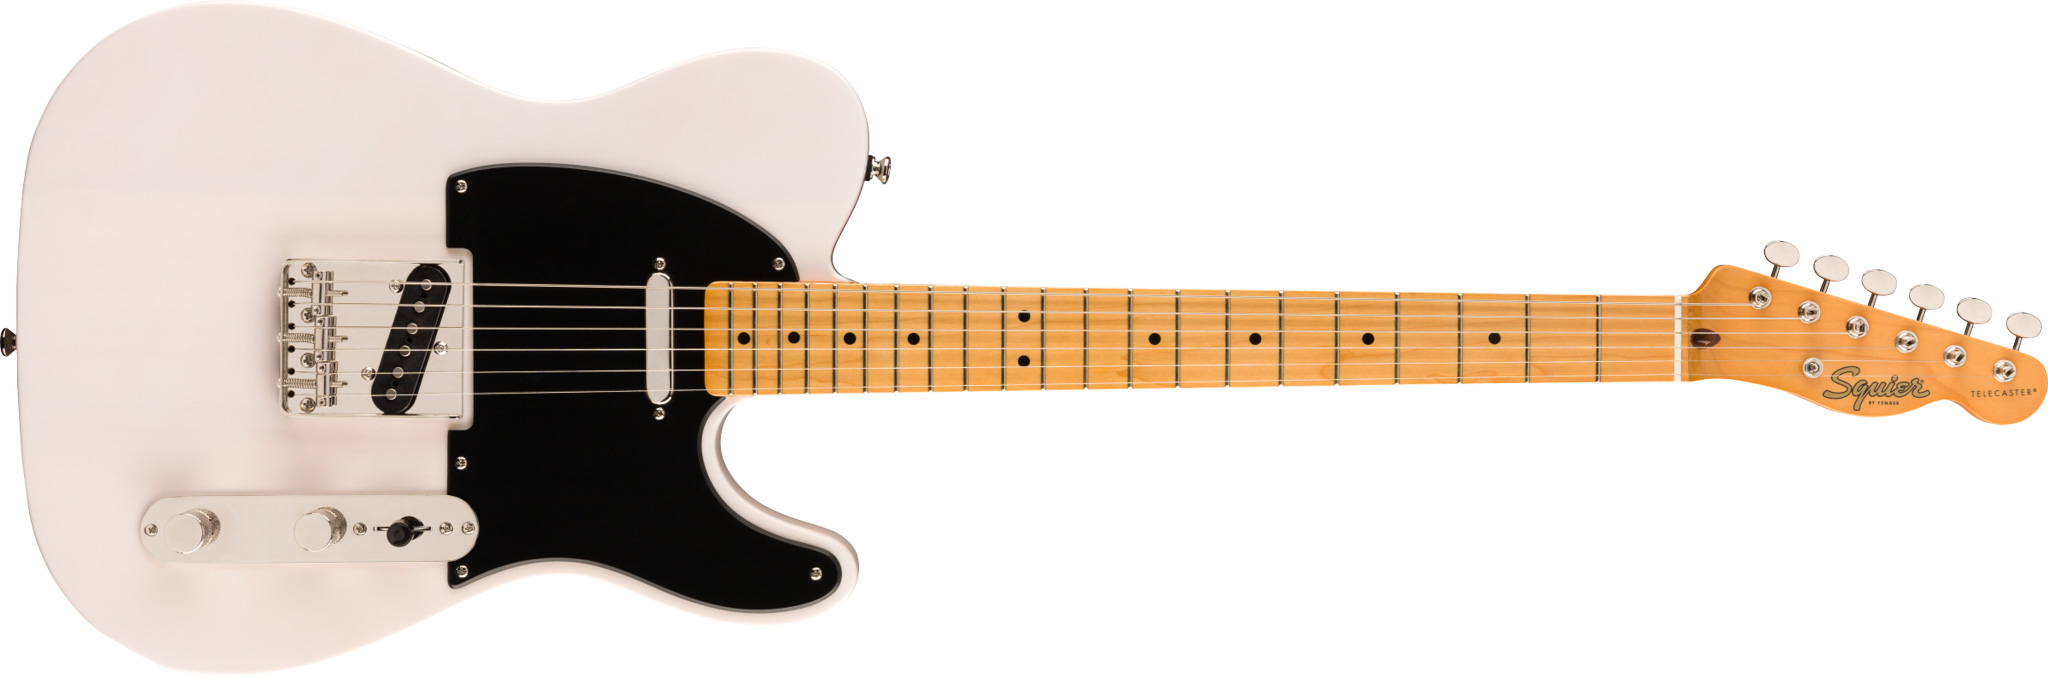 Billede af Fender Squier Classic Vibe '50s Telecaster El-guitar (White Blonde)